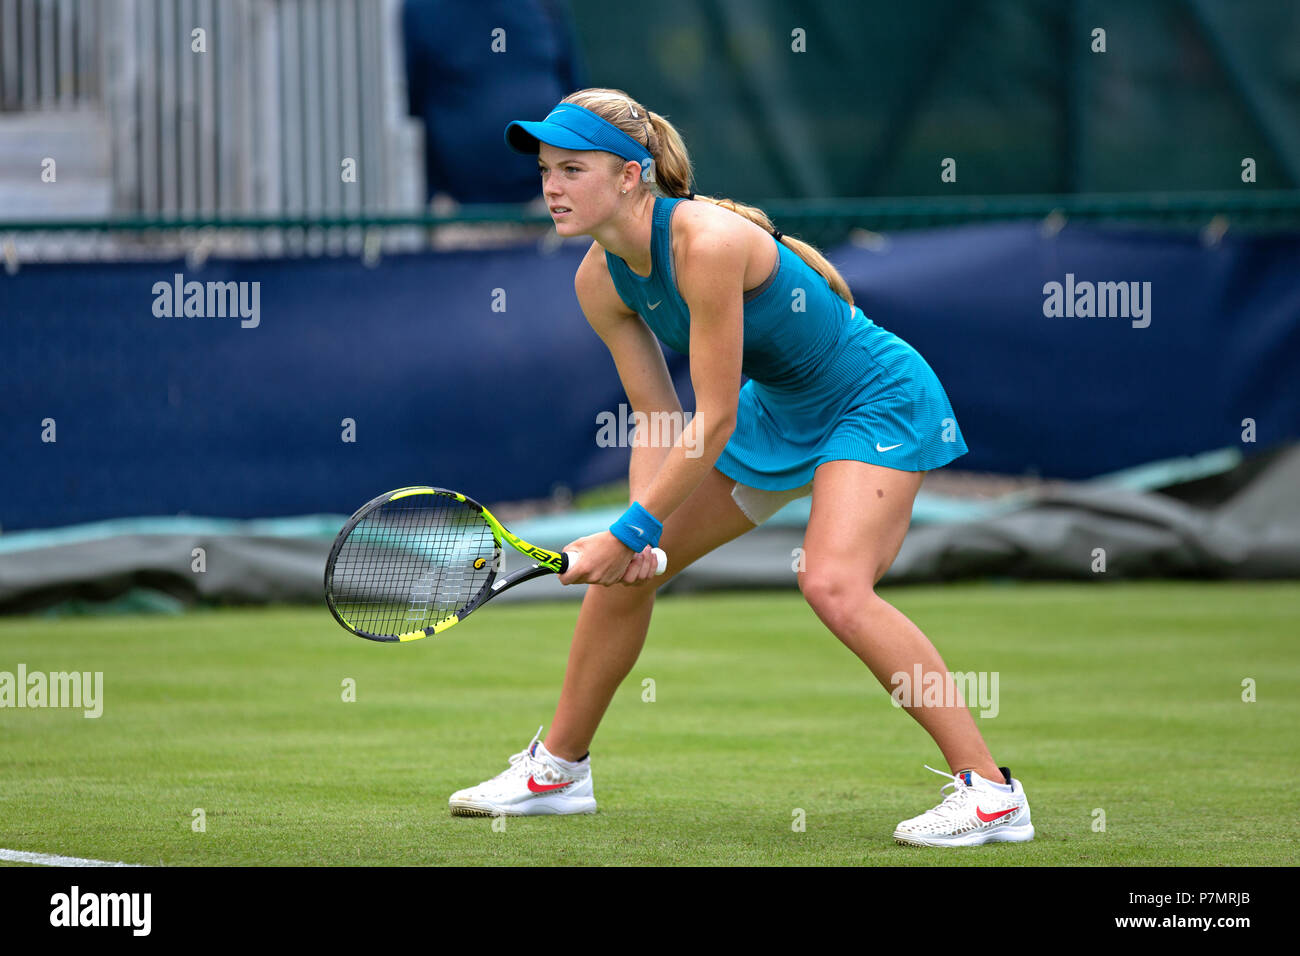 Un giocatore di tennis professionista (Katie Swan) posizionata nella posizione pronta durante una partita. Swan è in attesa di un servire dal suo avversario. Foto Stock